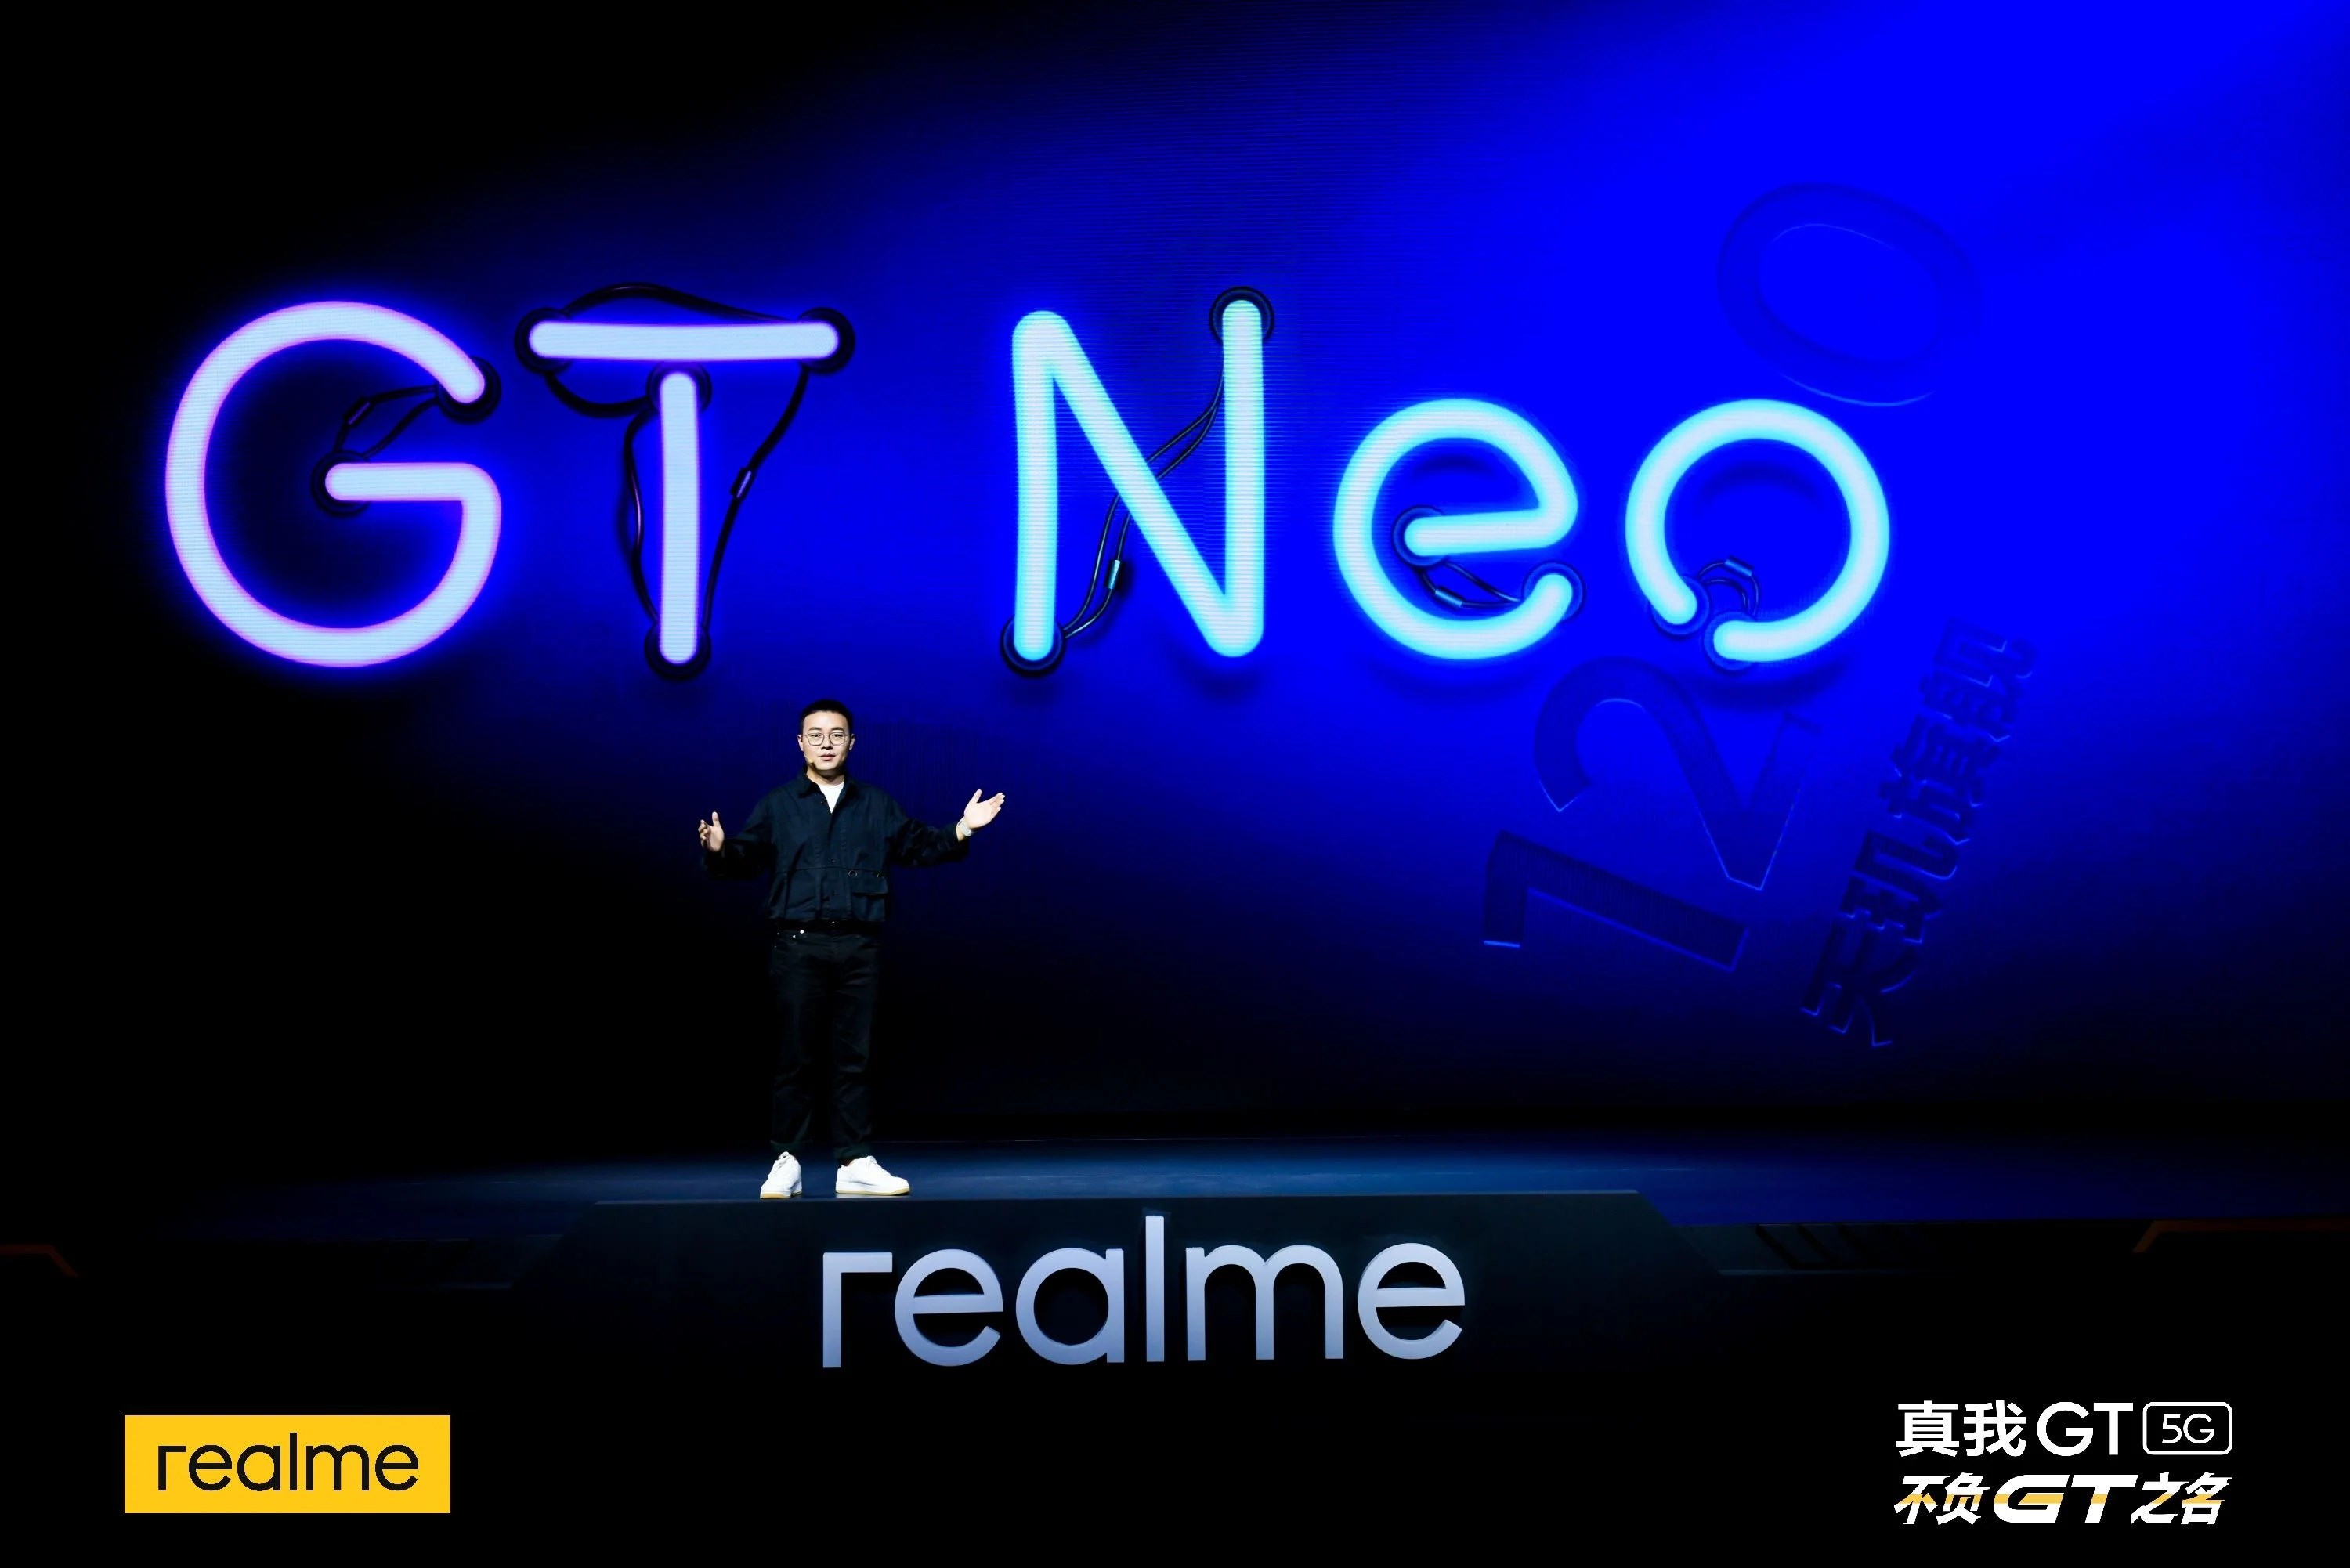 realme GT Neo uygun fiyata oyun tecrübesi sunacak